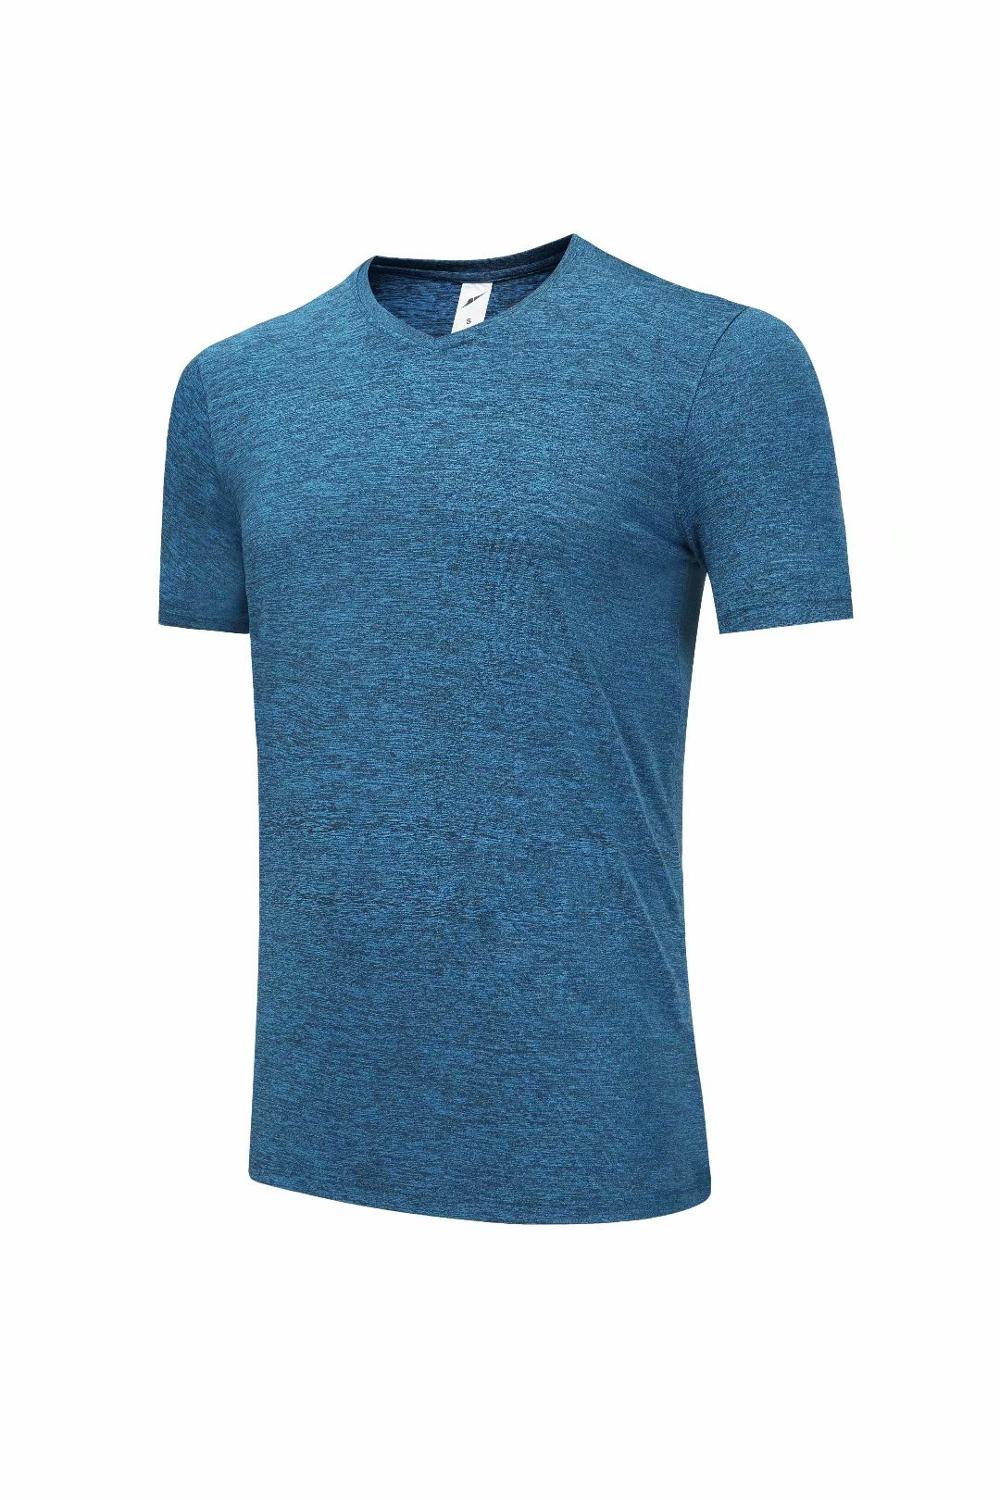 1809 Blauw Meer Training T-shirt